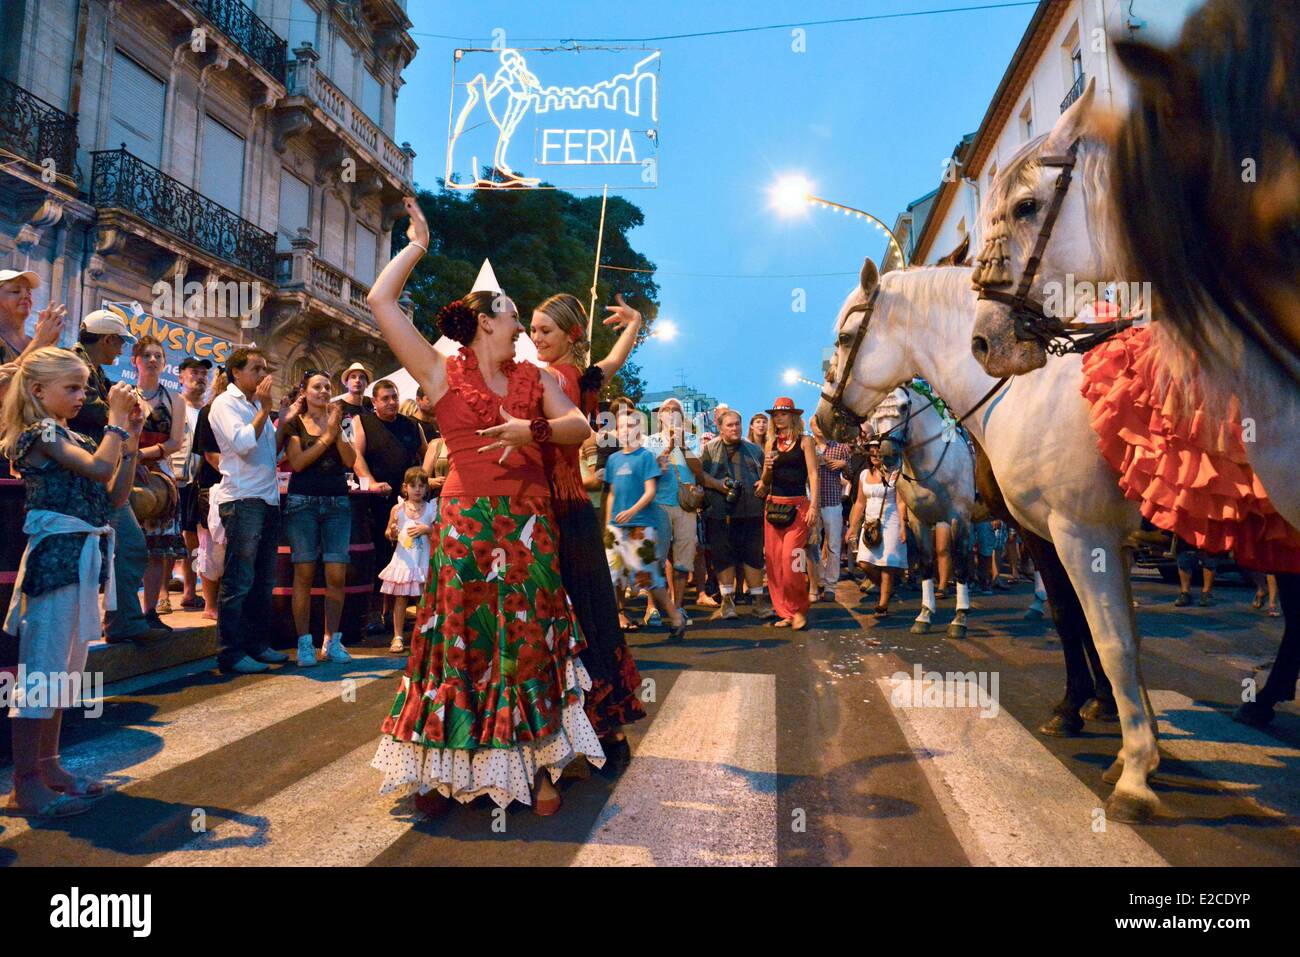 La France, l'Hérault, Béziers, feria annuel dans les rues de la ville, couple de danse flamenco andalou femmes un improvisé au milieu de la foule au crépuscule Banque D'Images